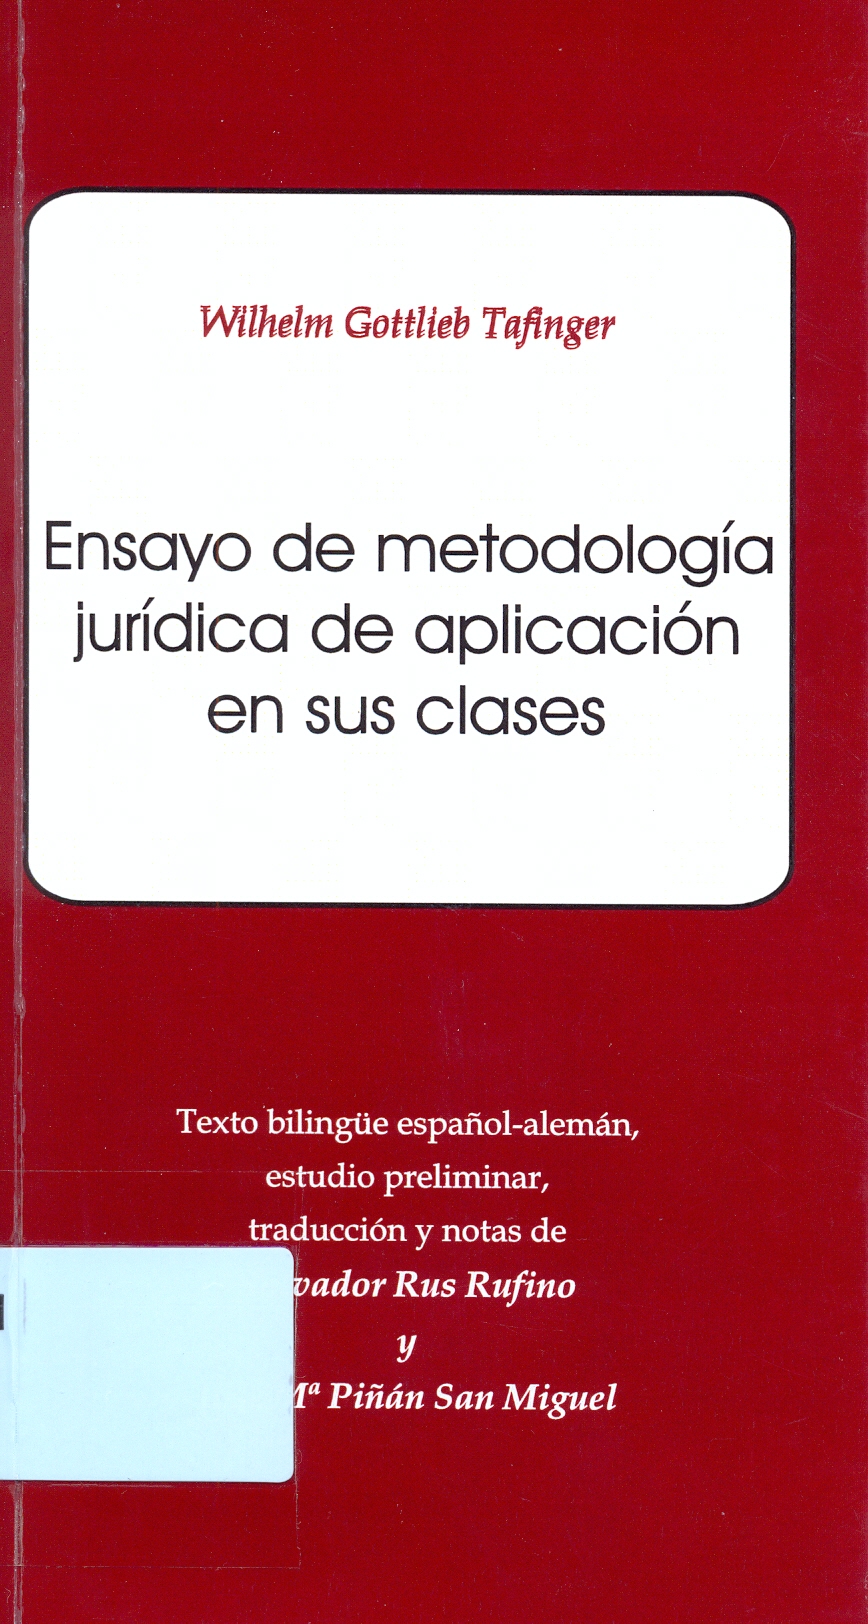 Imagen de portada del libro Ensayo de metodología jurídica de aplicación en sus clases